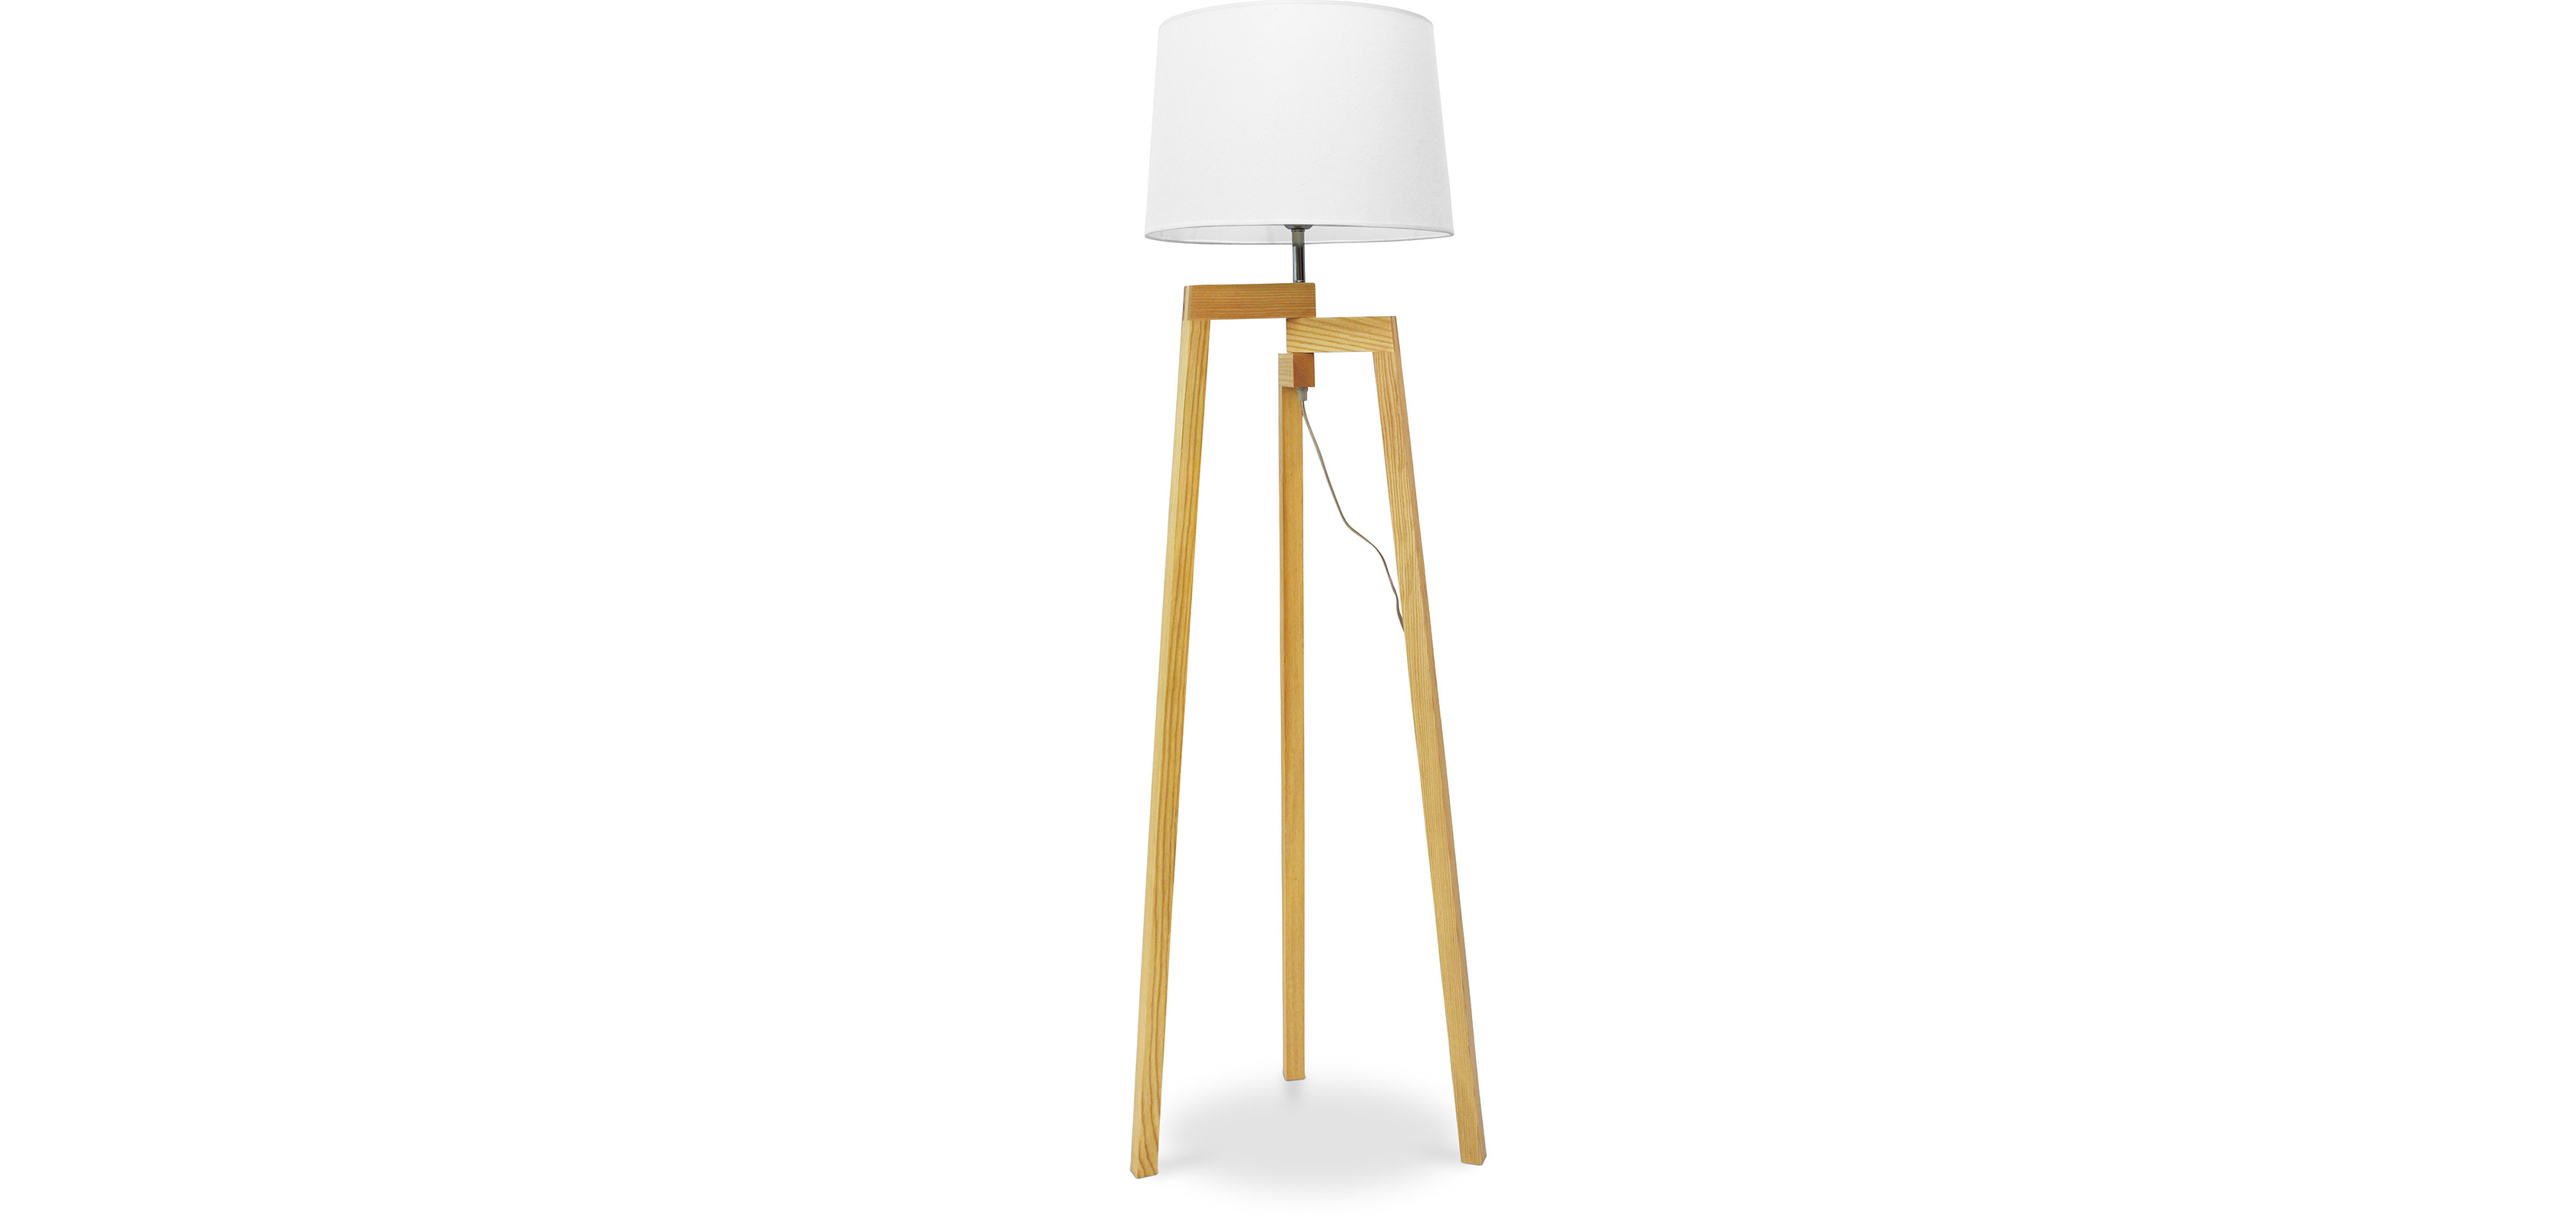 Dreibein Stehlampe - skandinavischen Lon im Design - Wohnzimmerlampe